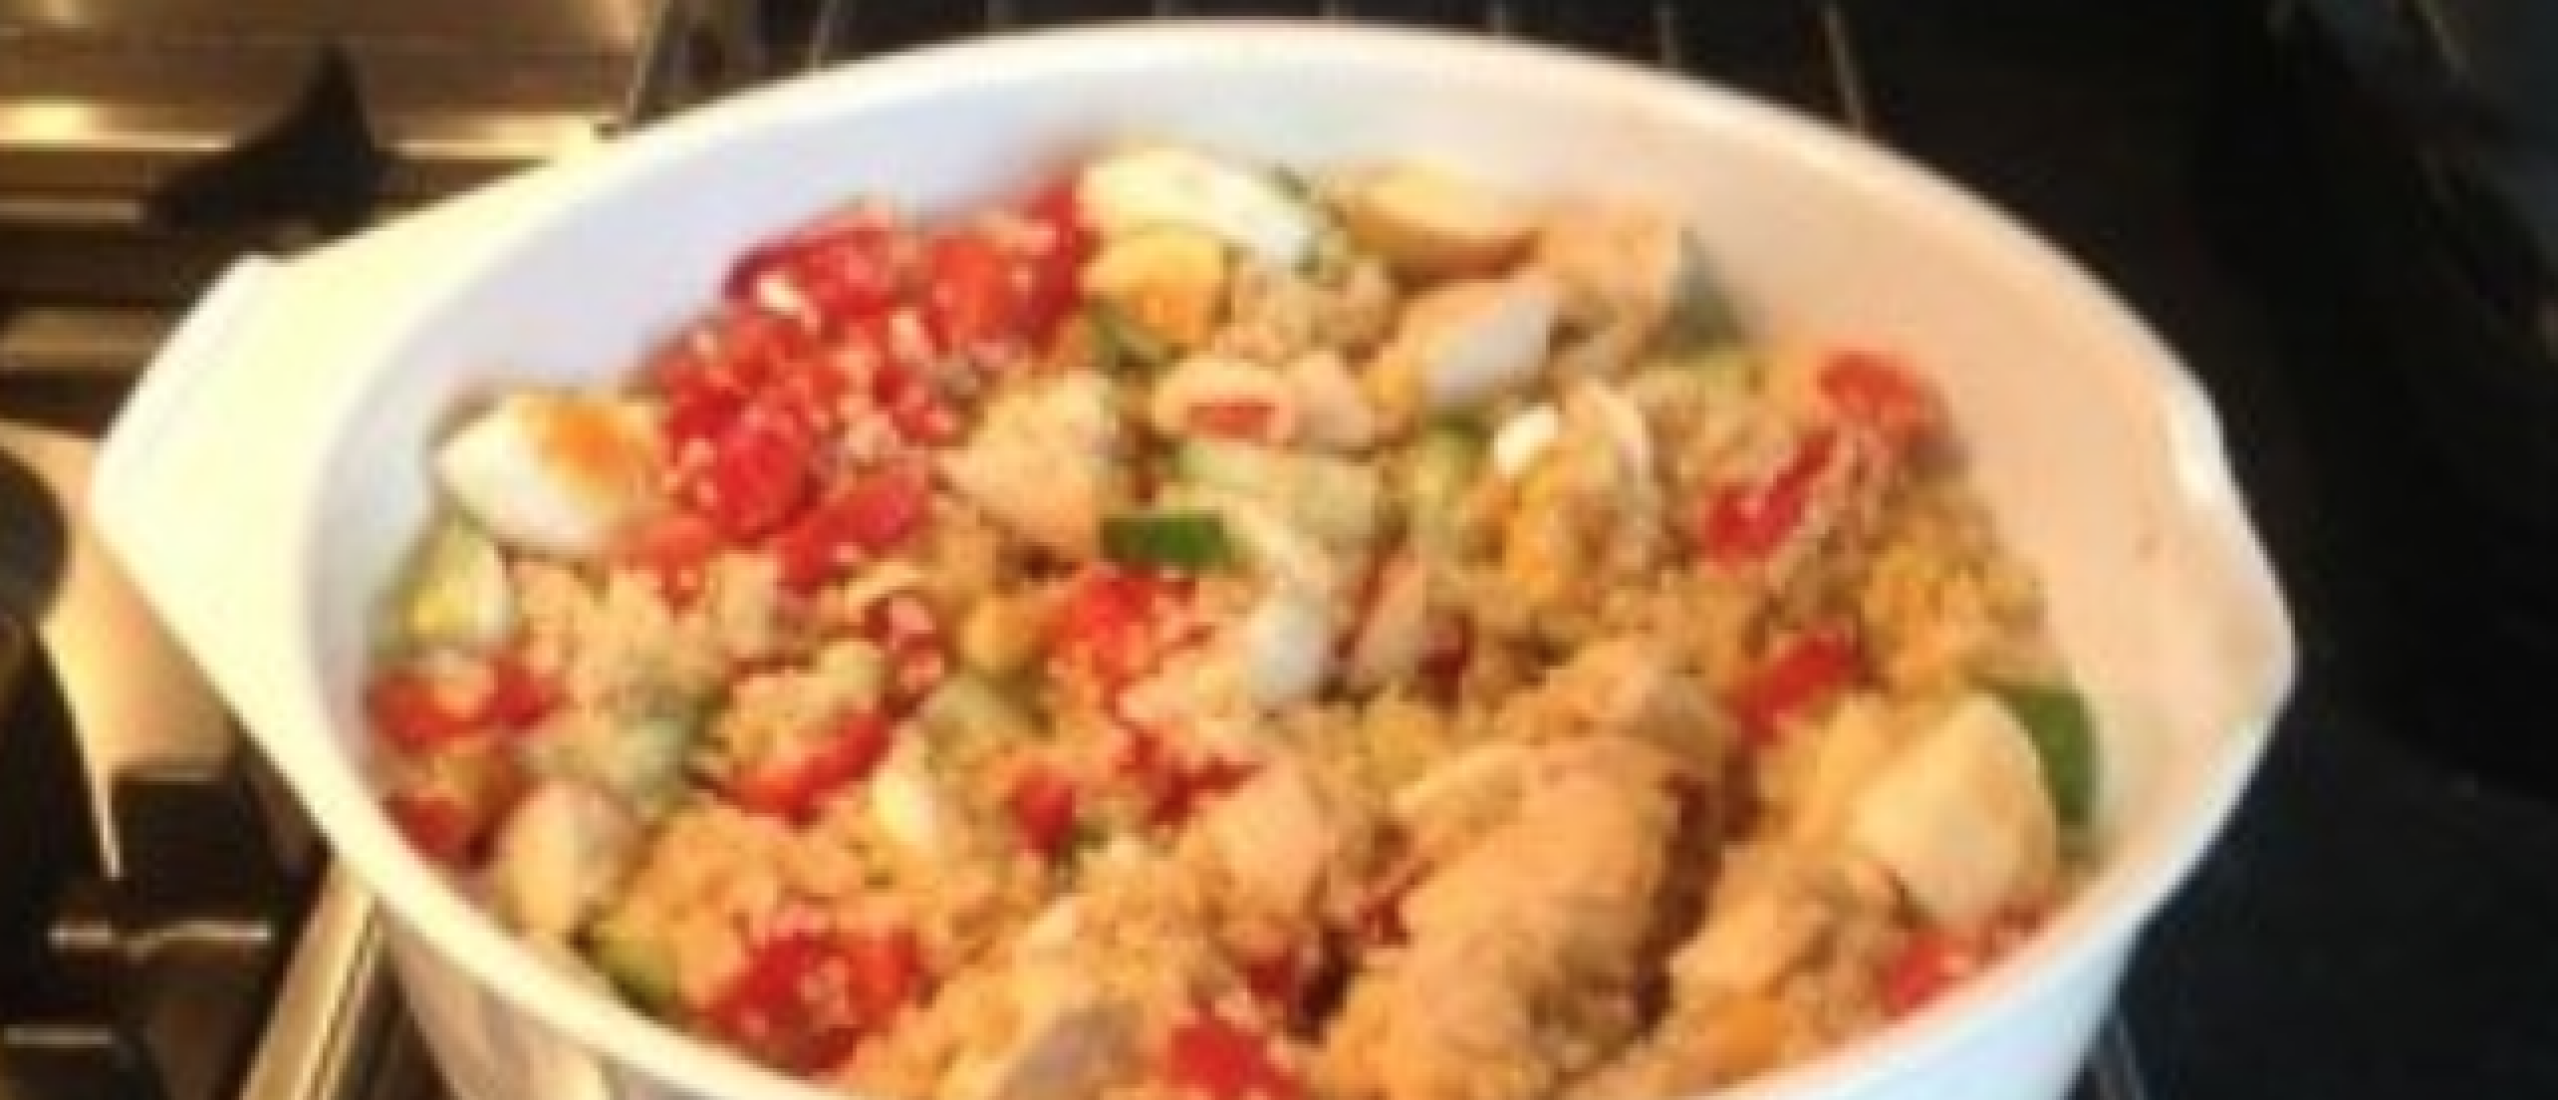 Recept voor quinoa salade